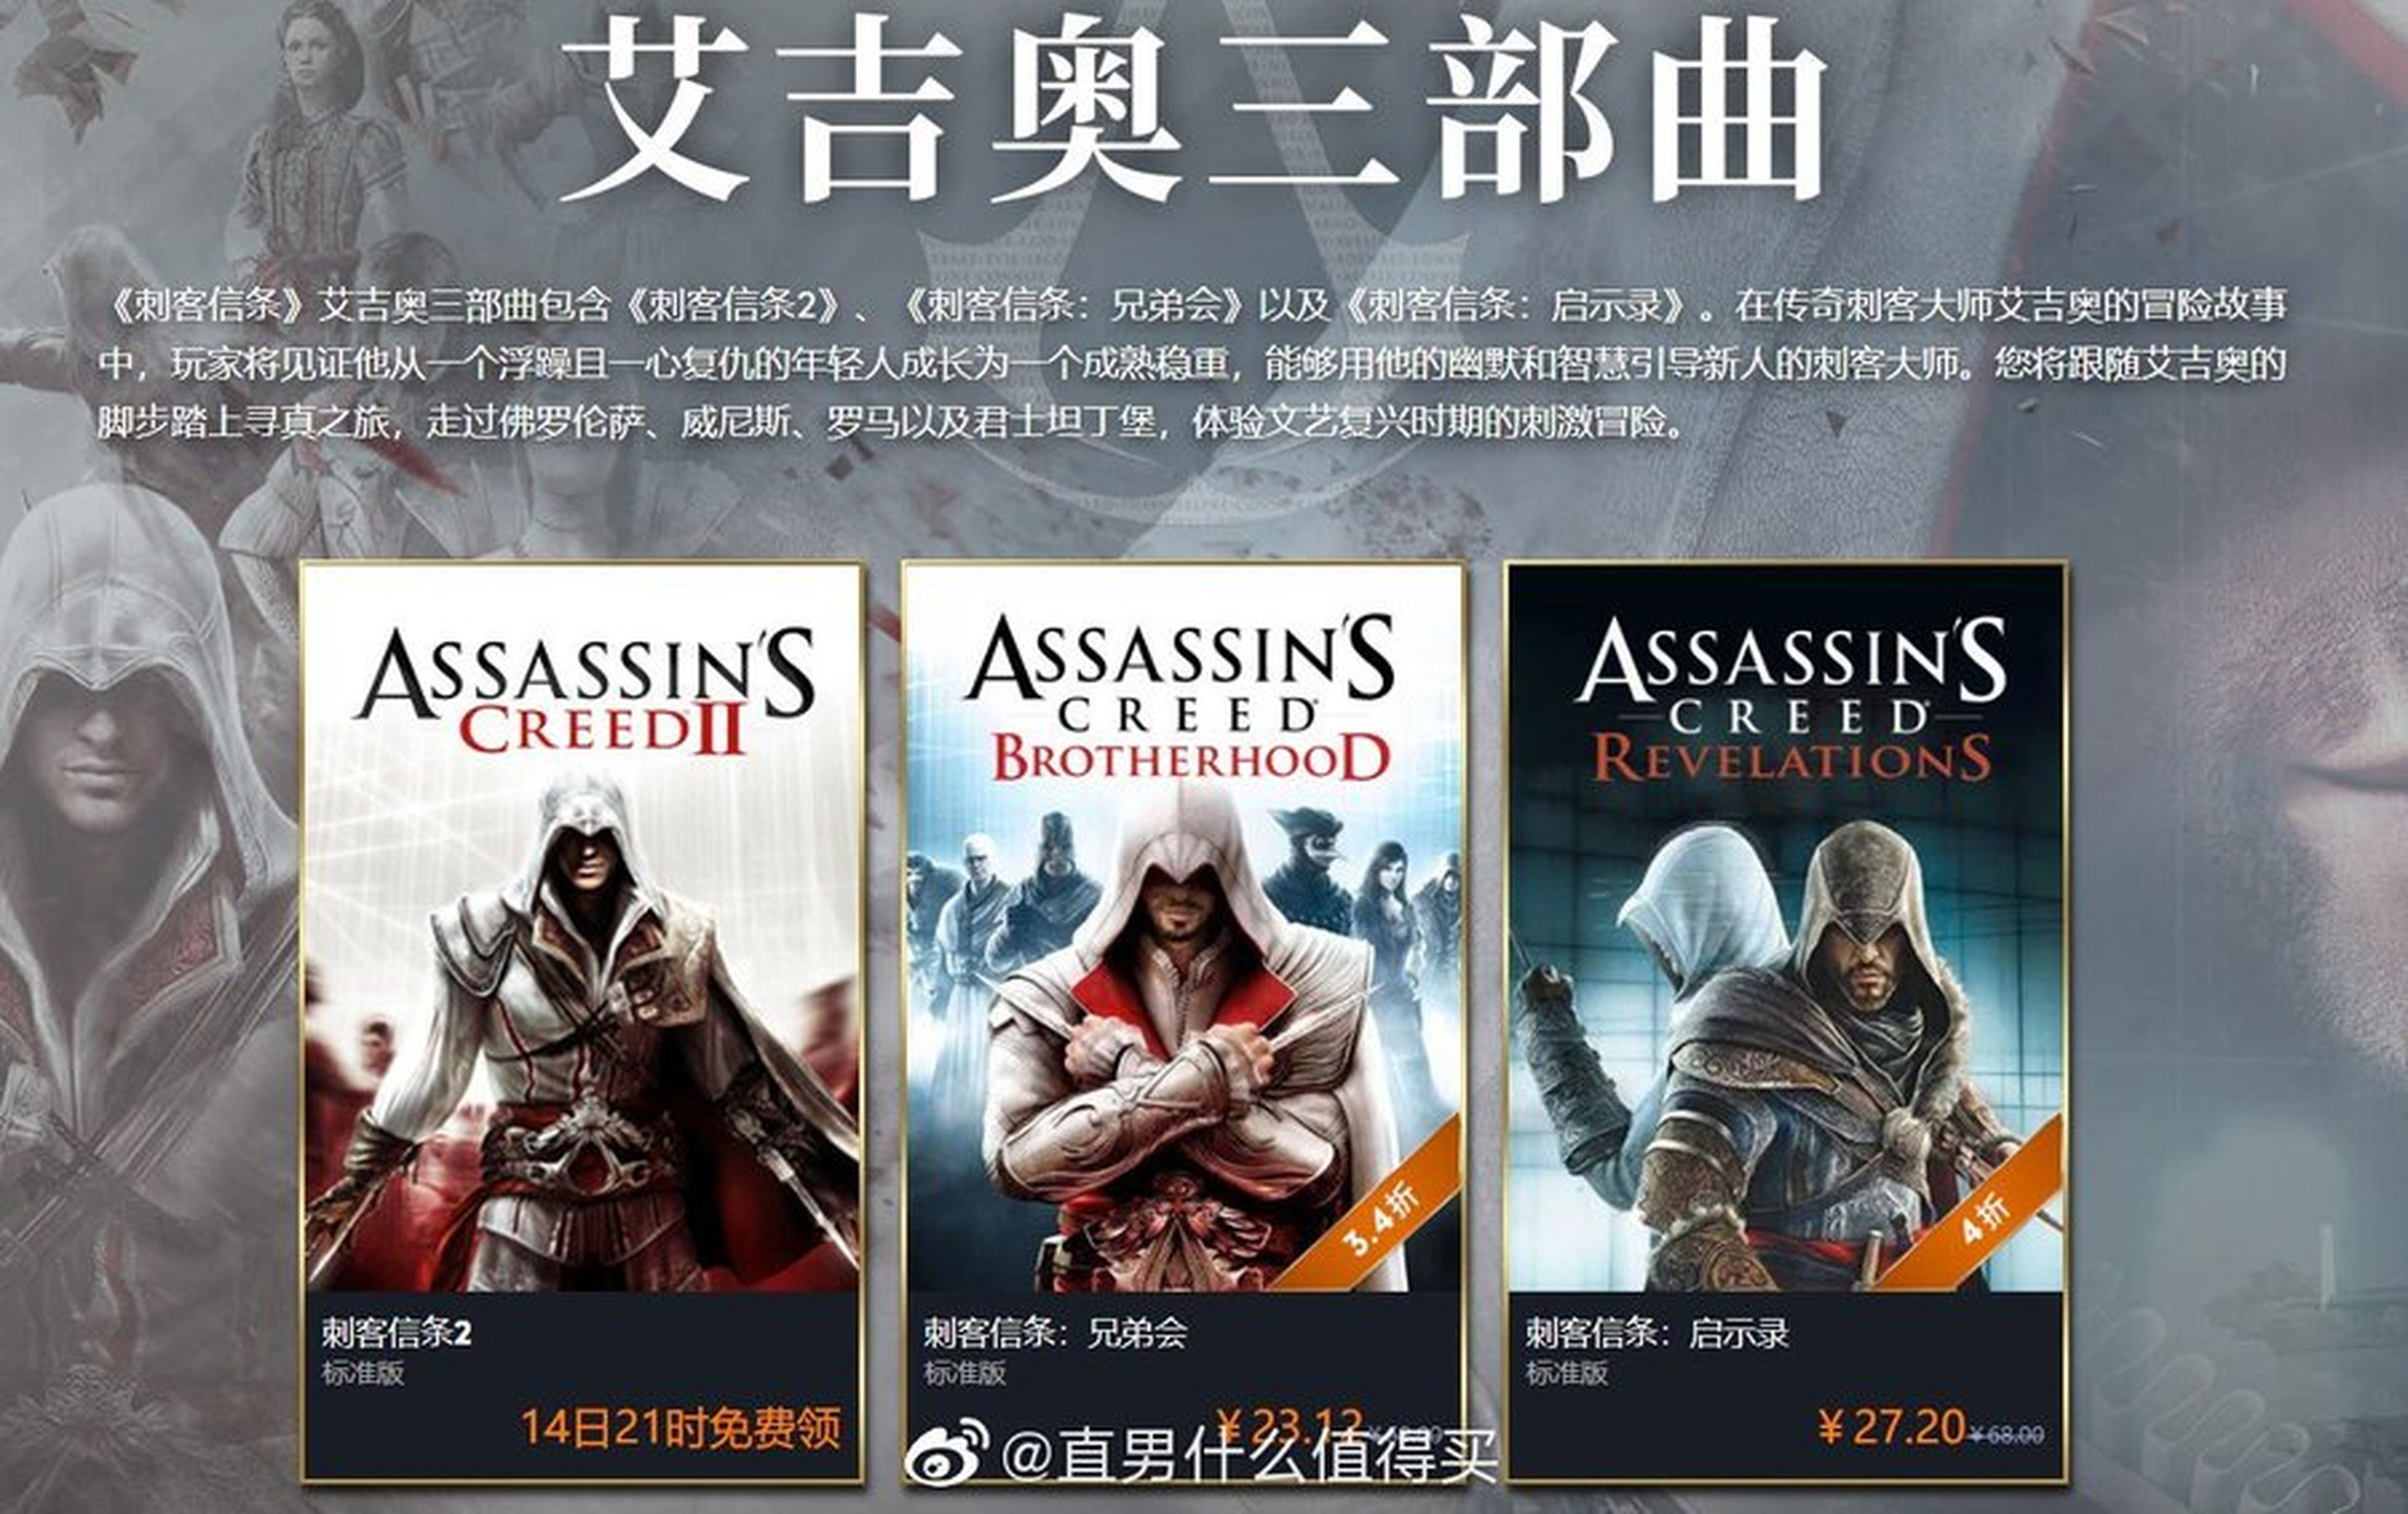 Assassin's Creed II gratis